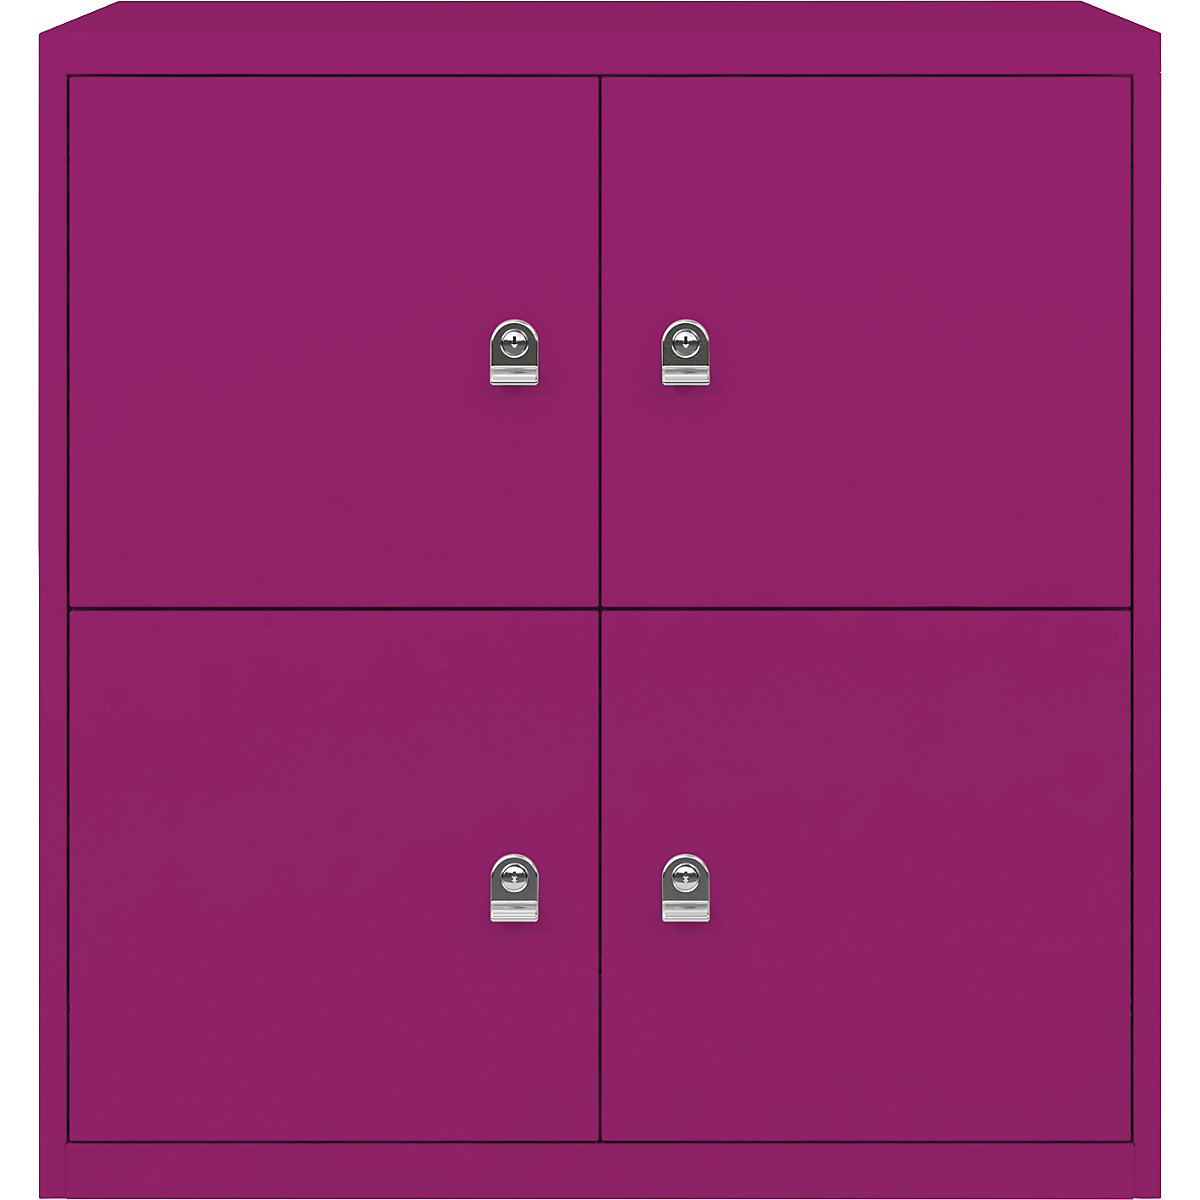 Ormar LateralFile™ Lodge – BISLEY, s 4 pretinca sa zaključavanjem, visina po 375 mm, u fuksija ružičastoj boji-26